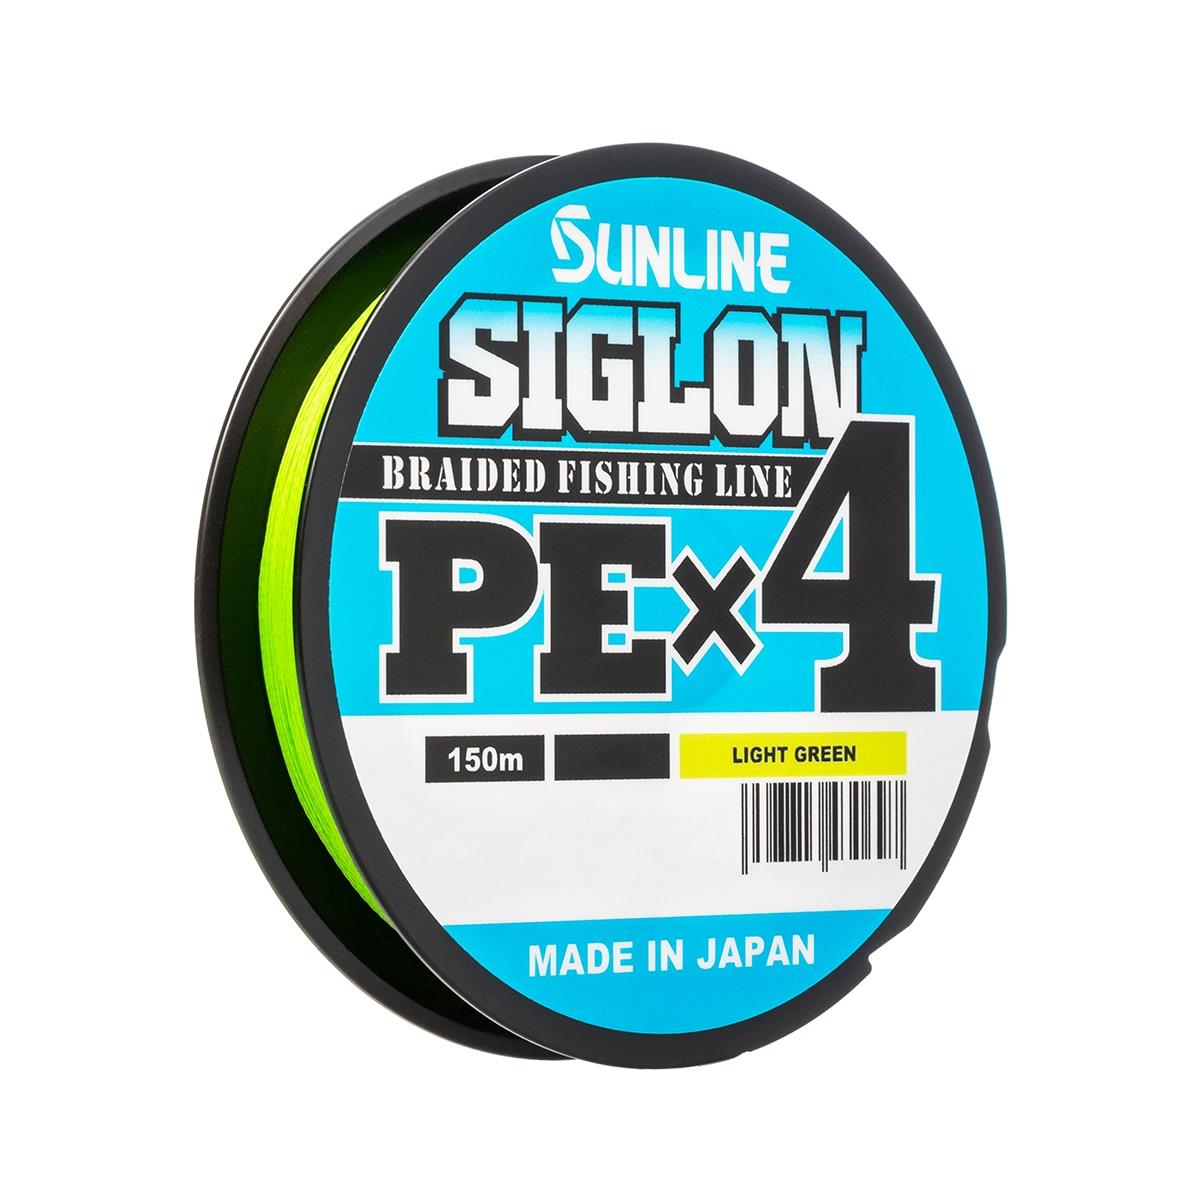 Шнур SIGLON PE×4 150 м (Light green) Sunline плетеный восьмипрядный джутовый шнур щит